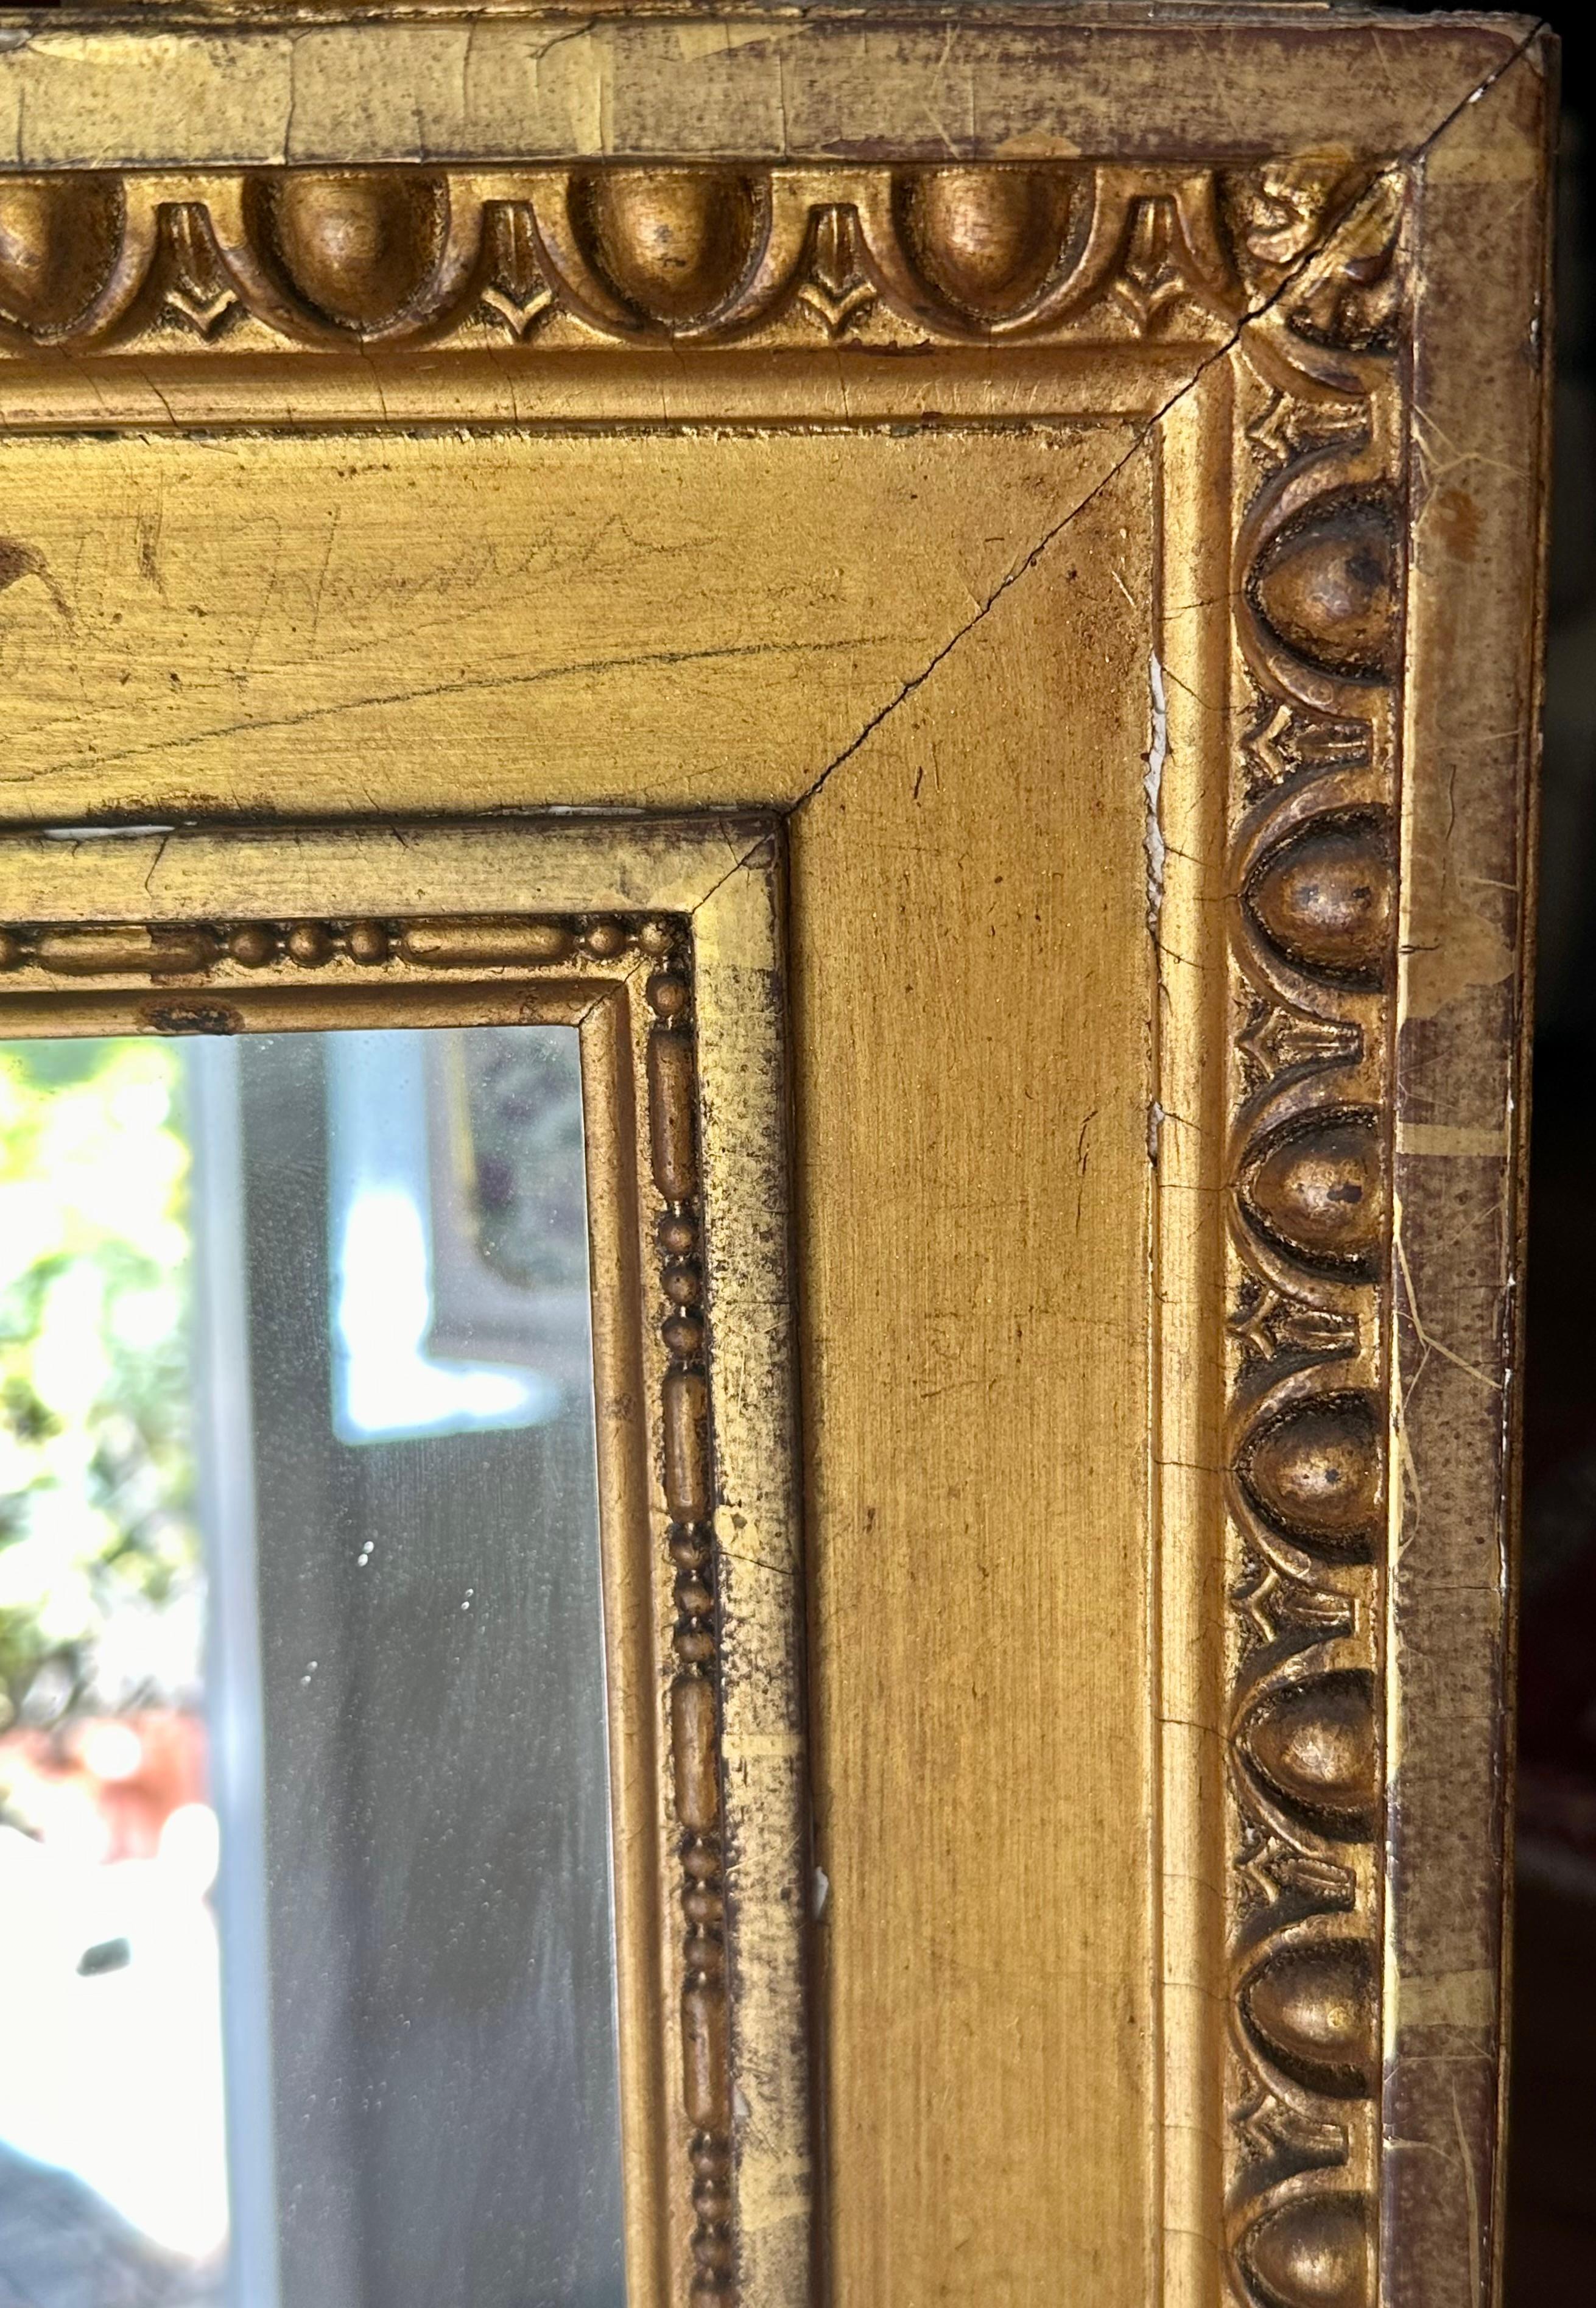 Grand miroir mural doré de style Louis XVI du XIXe siècle

Grand miroir mural doré de style Louis XVI français du XIXe siècle. Cadre magnifique et élégant avec bordure en forme d'œuf et de dard. L'écusson comporte une couronne et un ruban. Deux